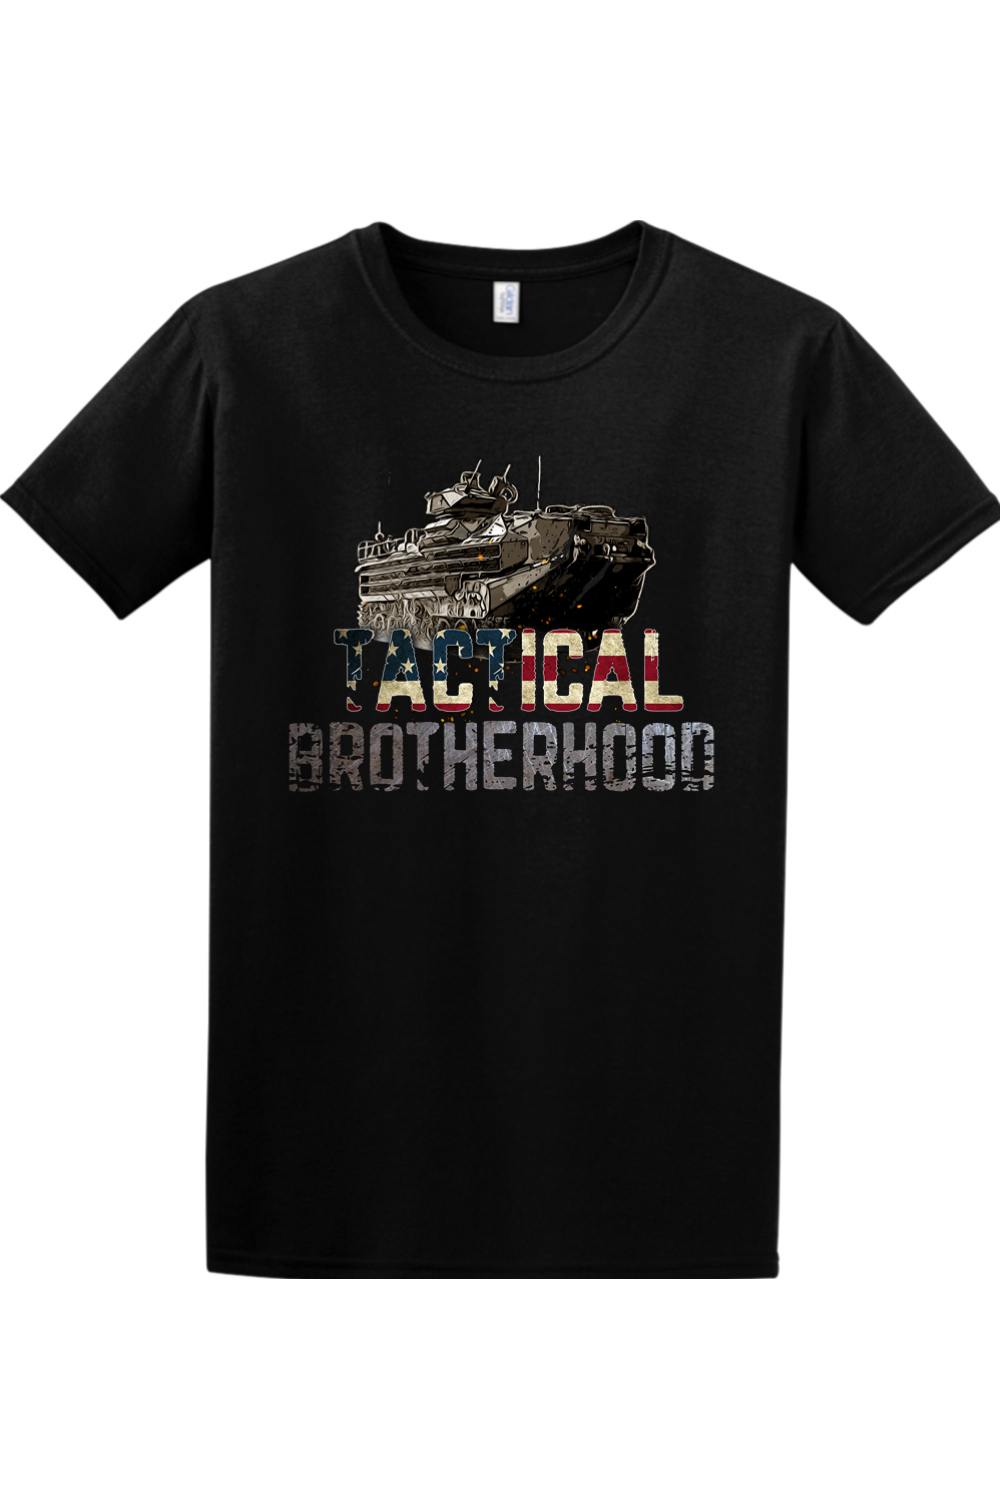 AAV - Tactical Brotherhood